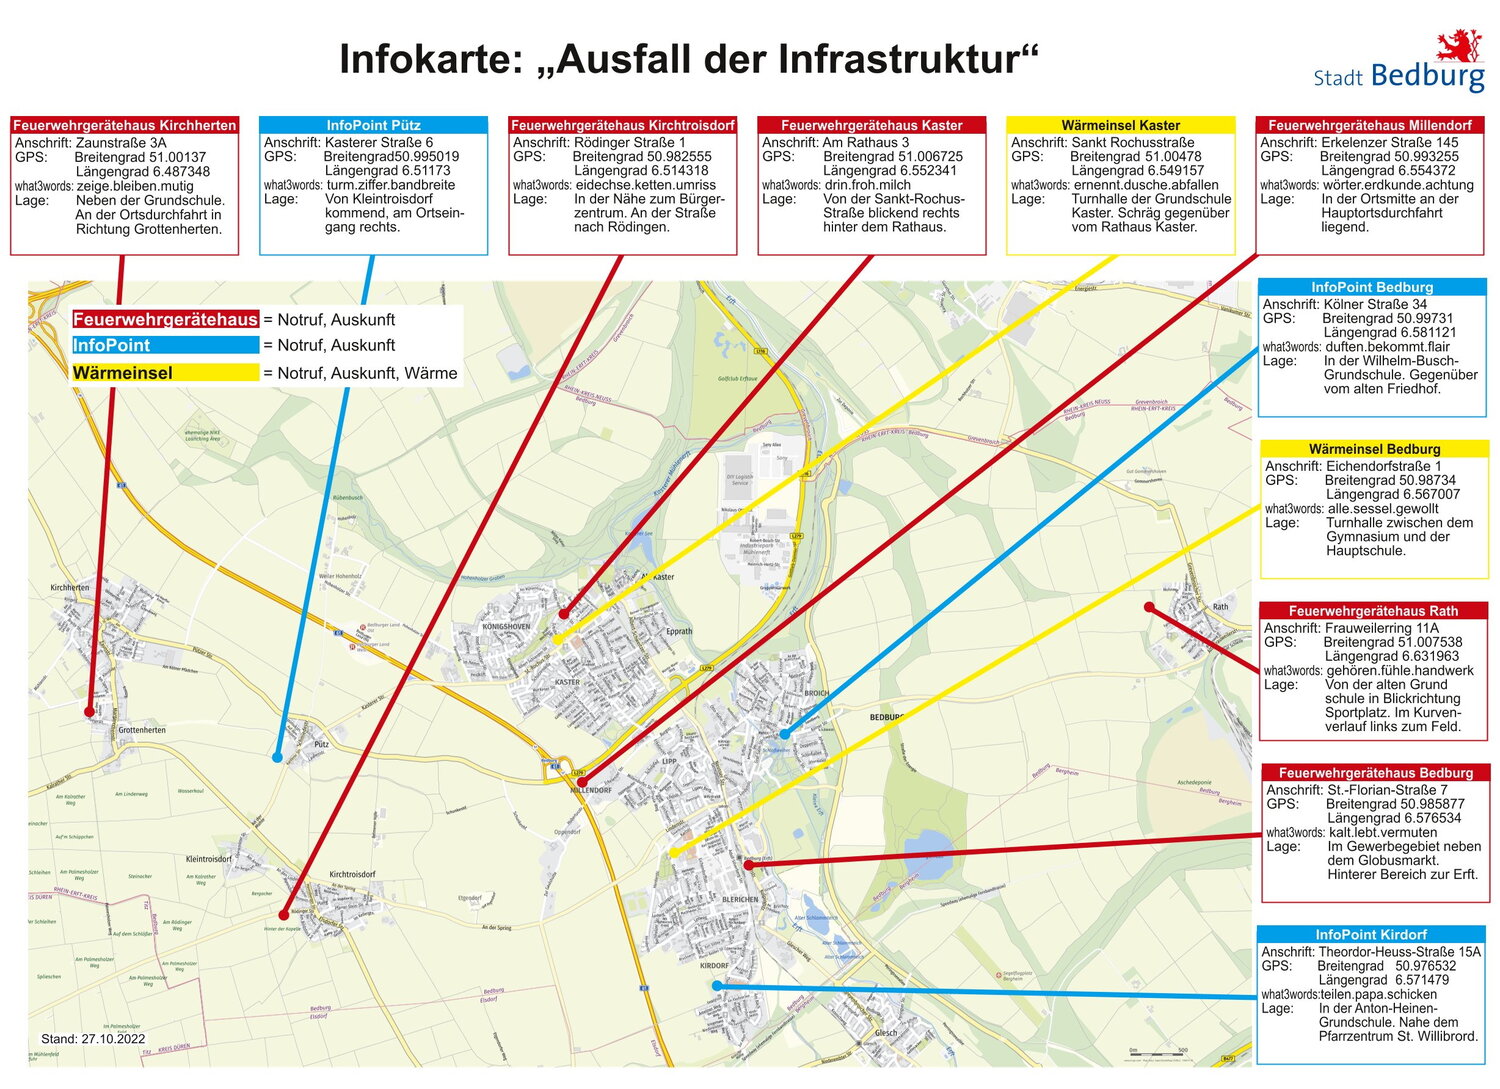 Infokarte Ausfall der Infrastruktur / Blackout